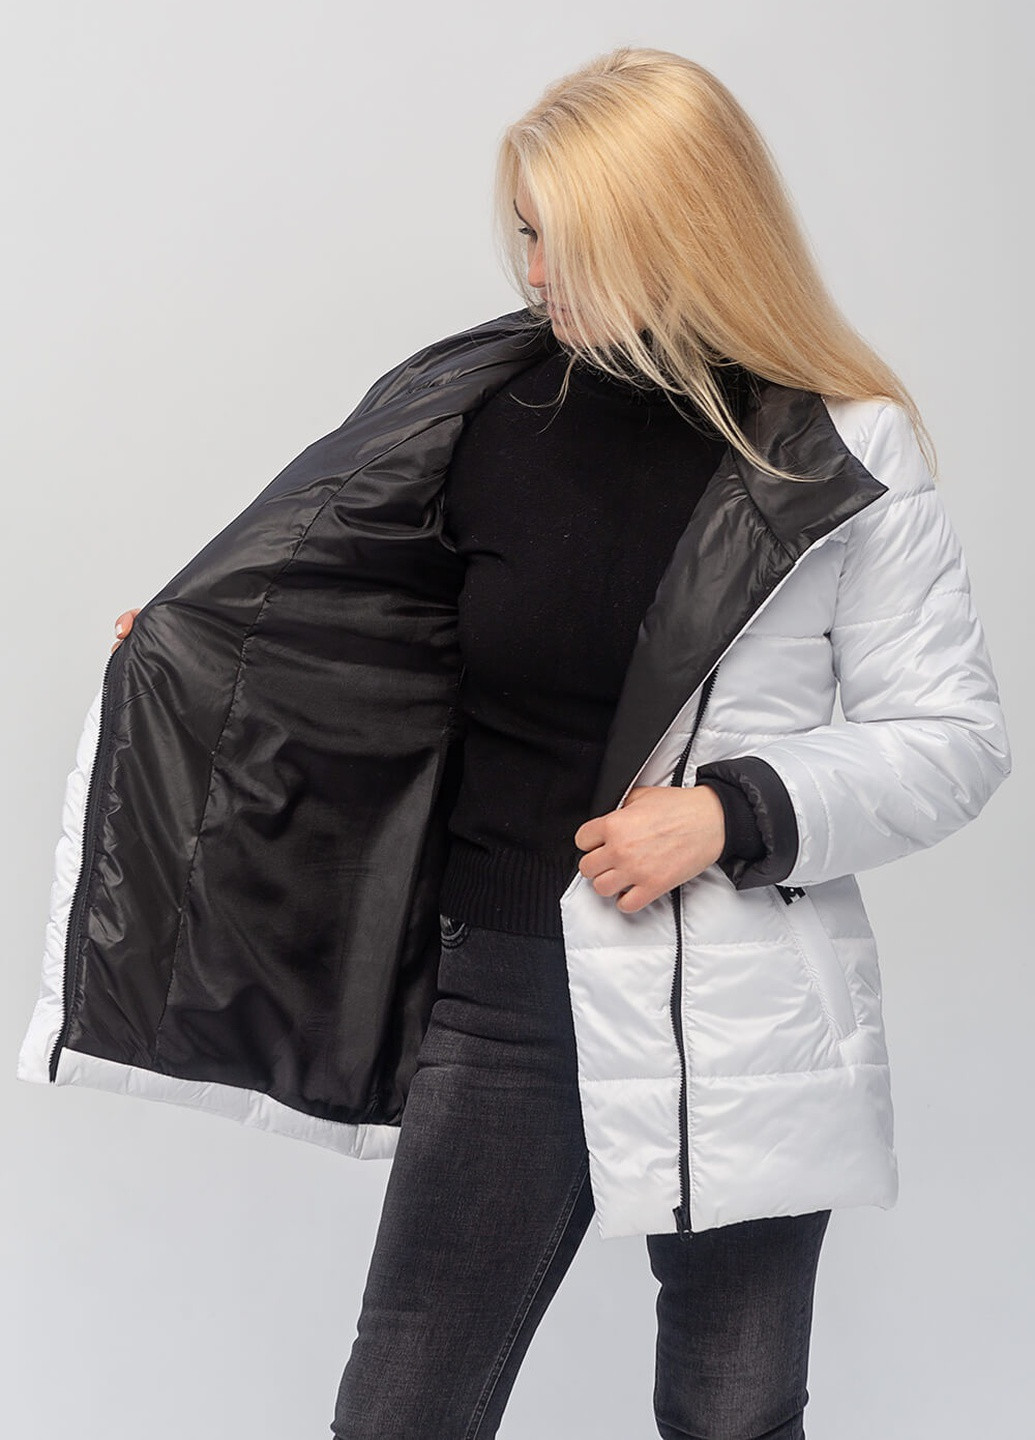 Белая демисезонная демисезонная женская куртка мартина с поясом MioRichi